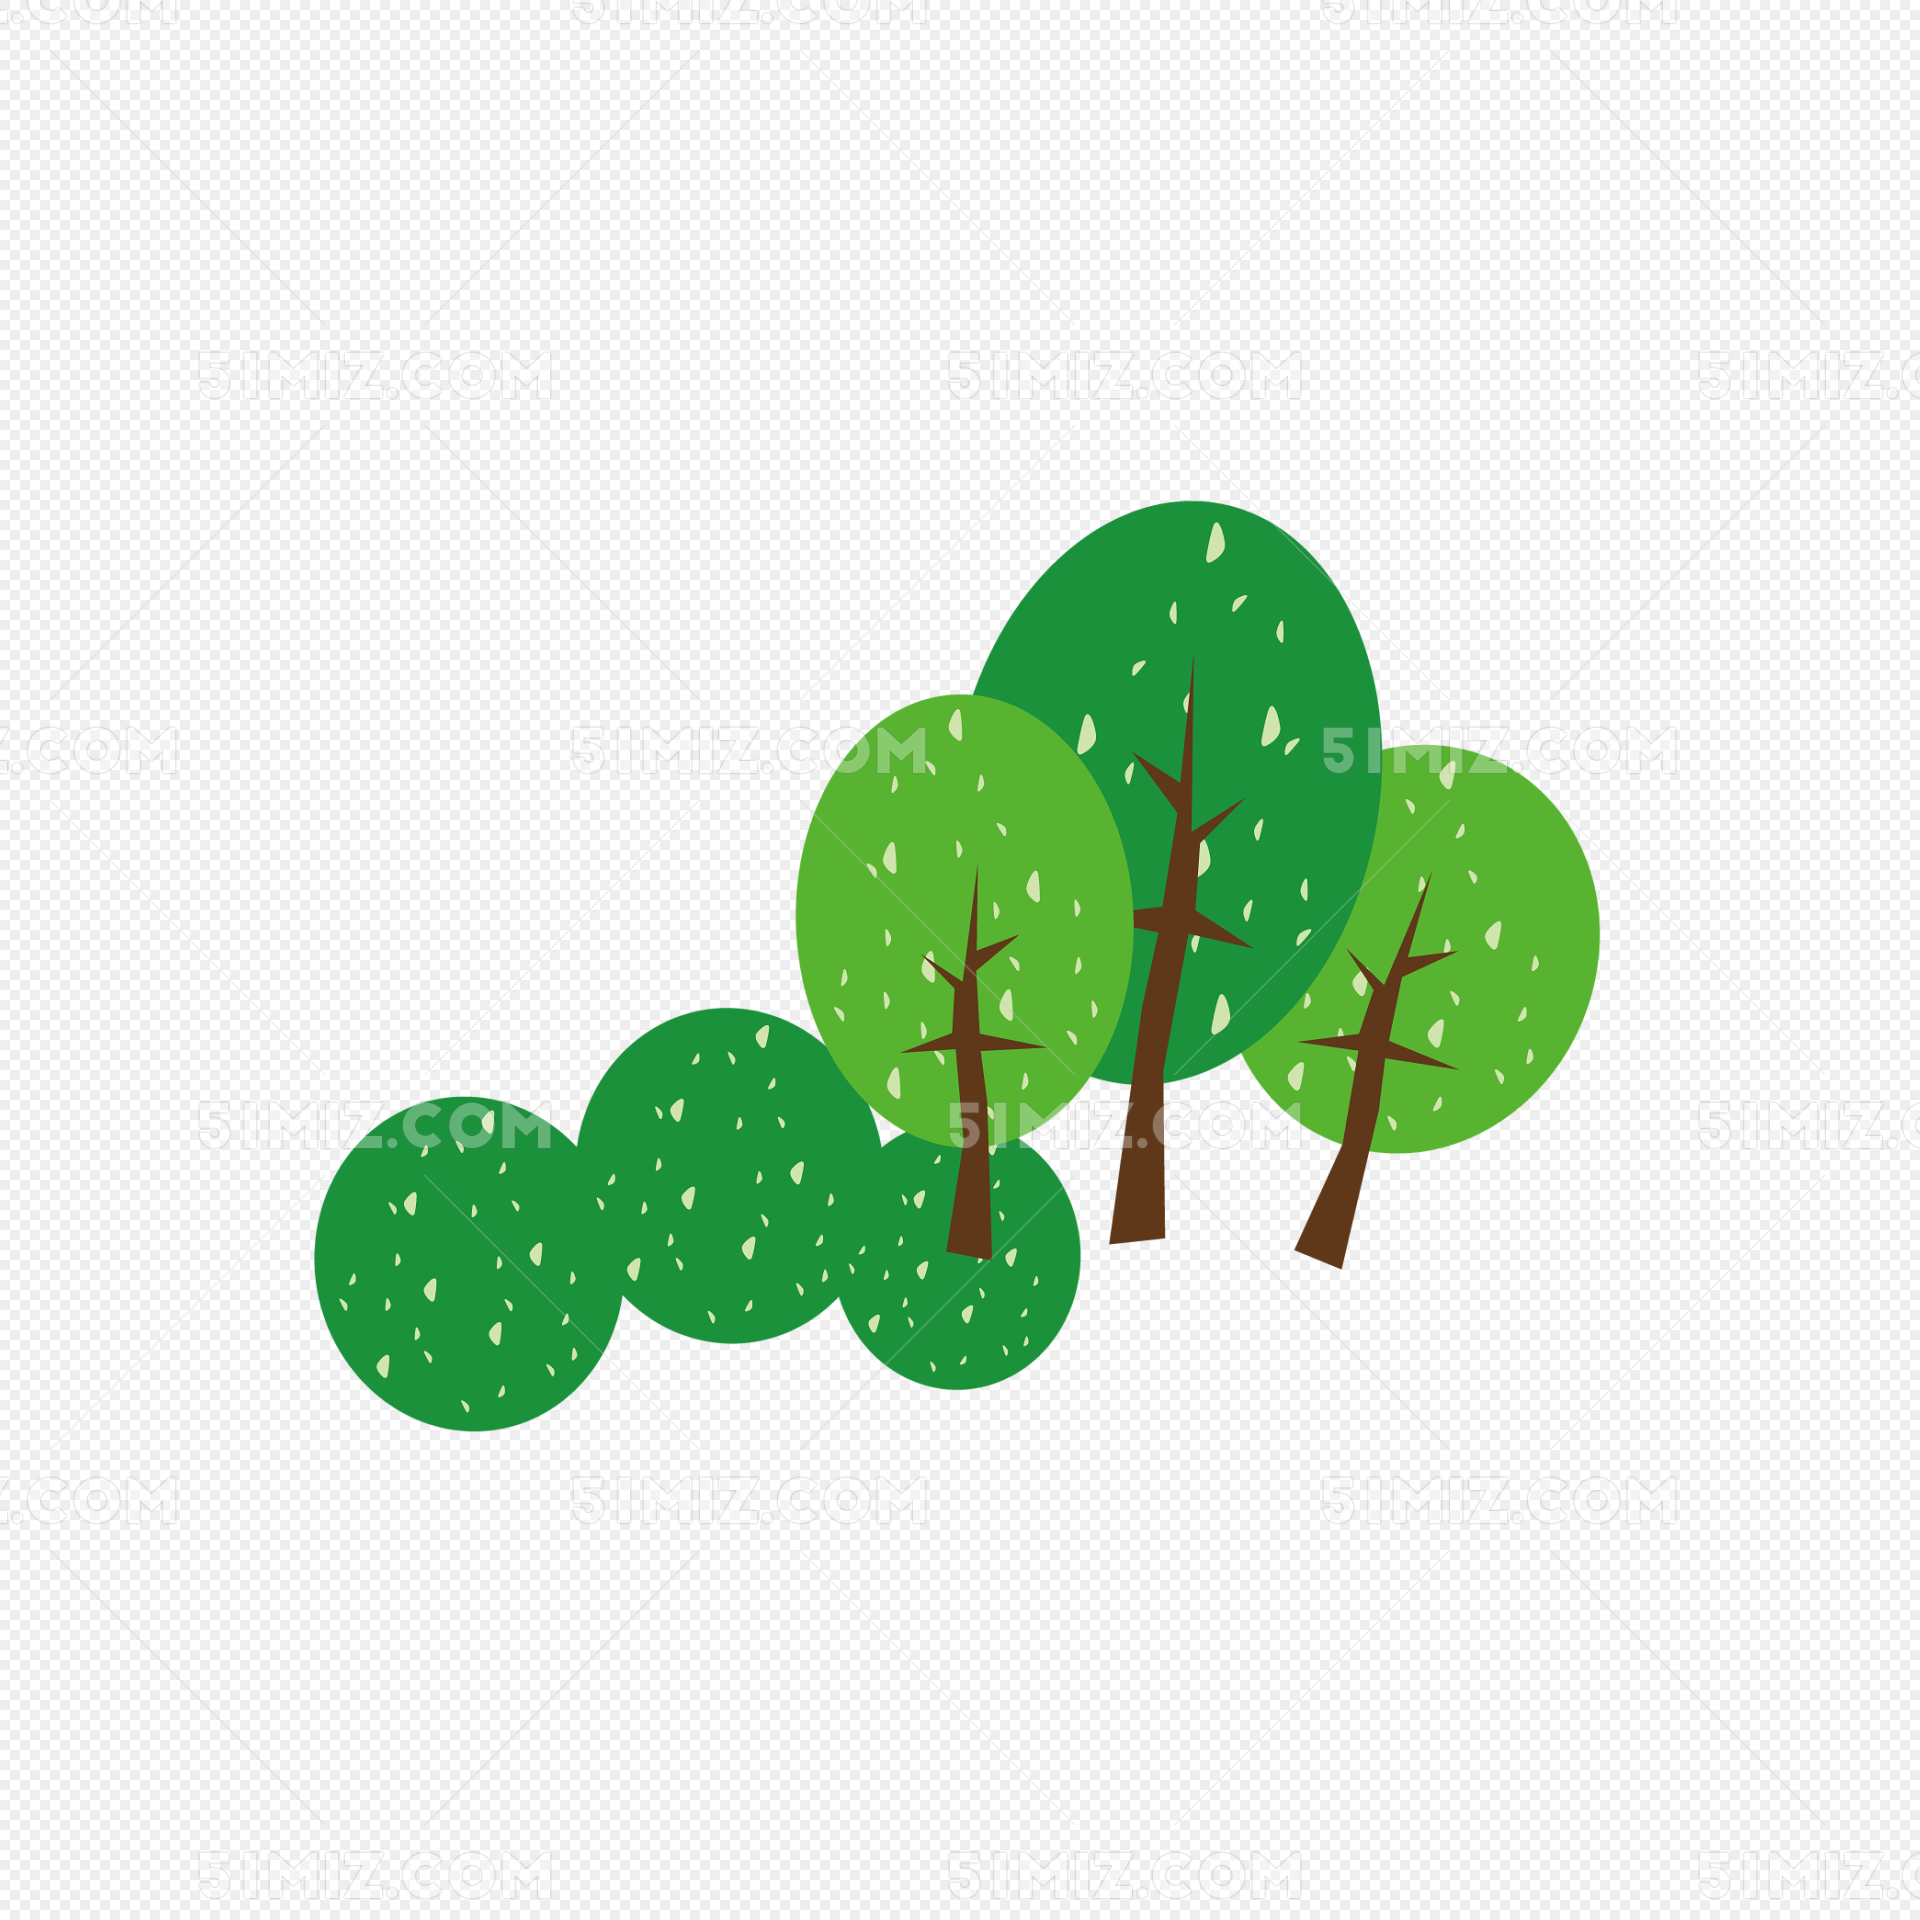 绿色卡通的小树插画图片_动漫卡通_插画绘画-图行天下素材网